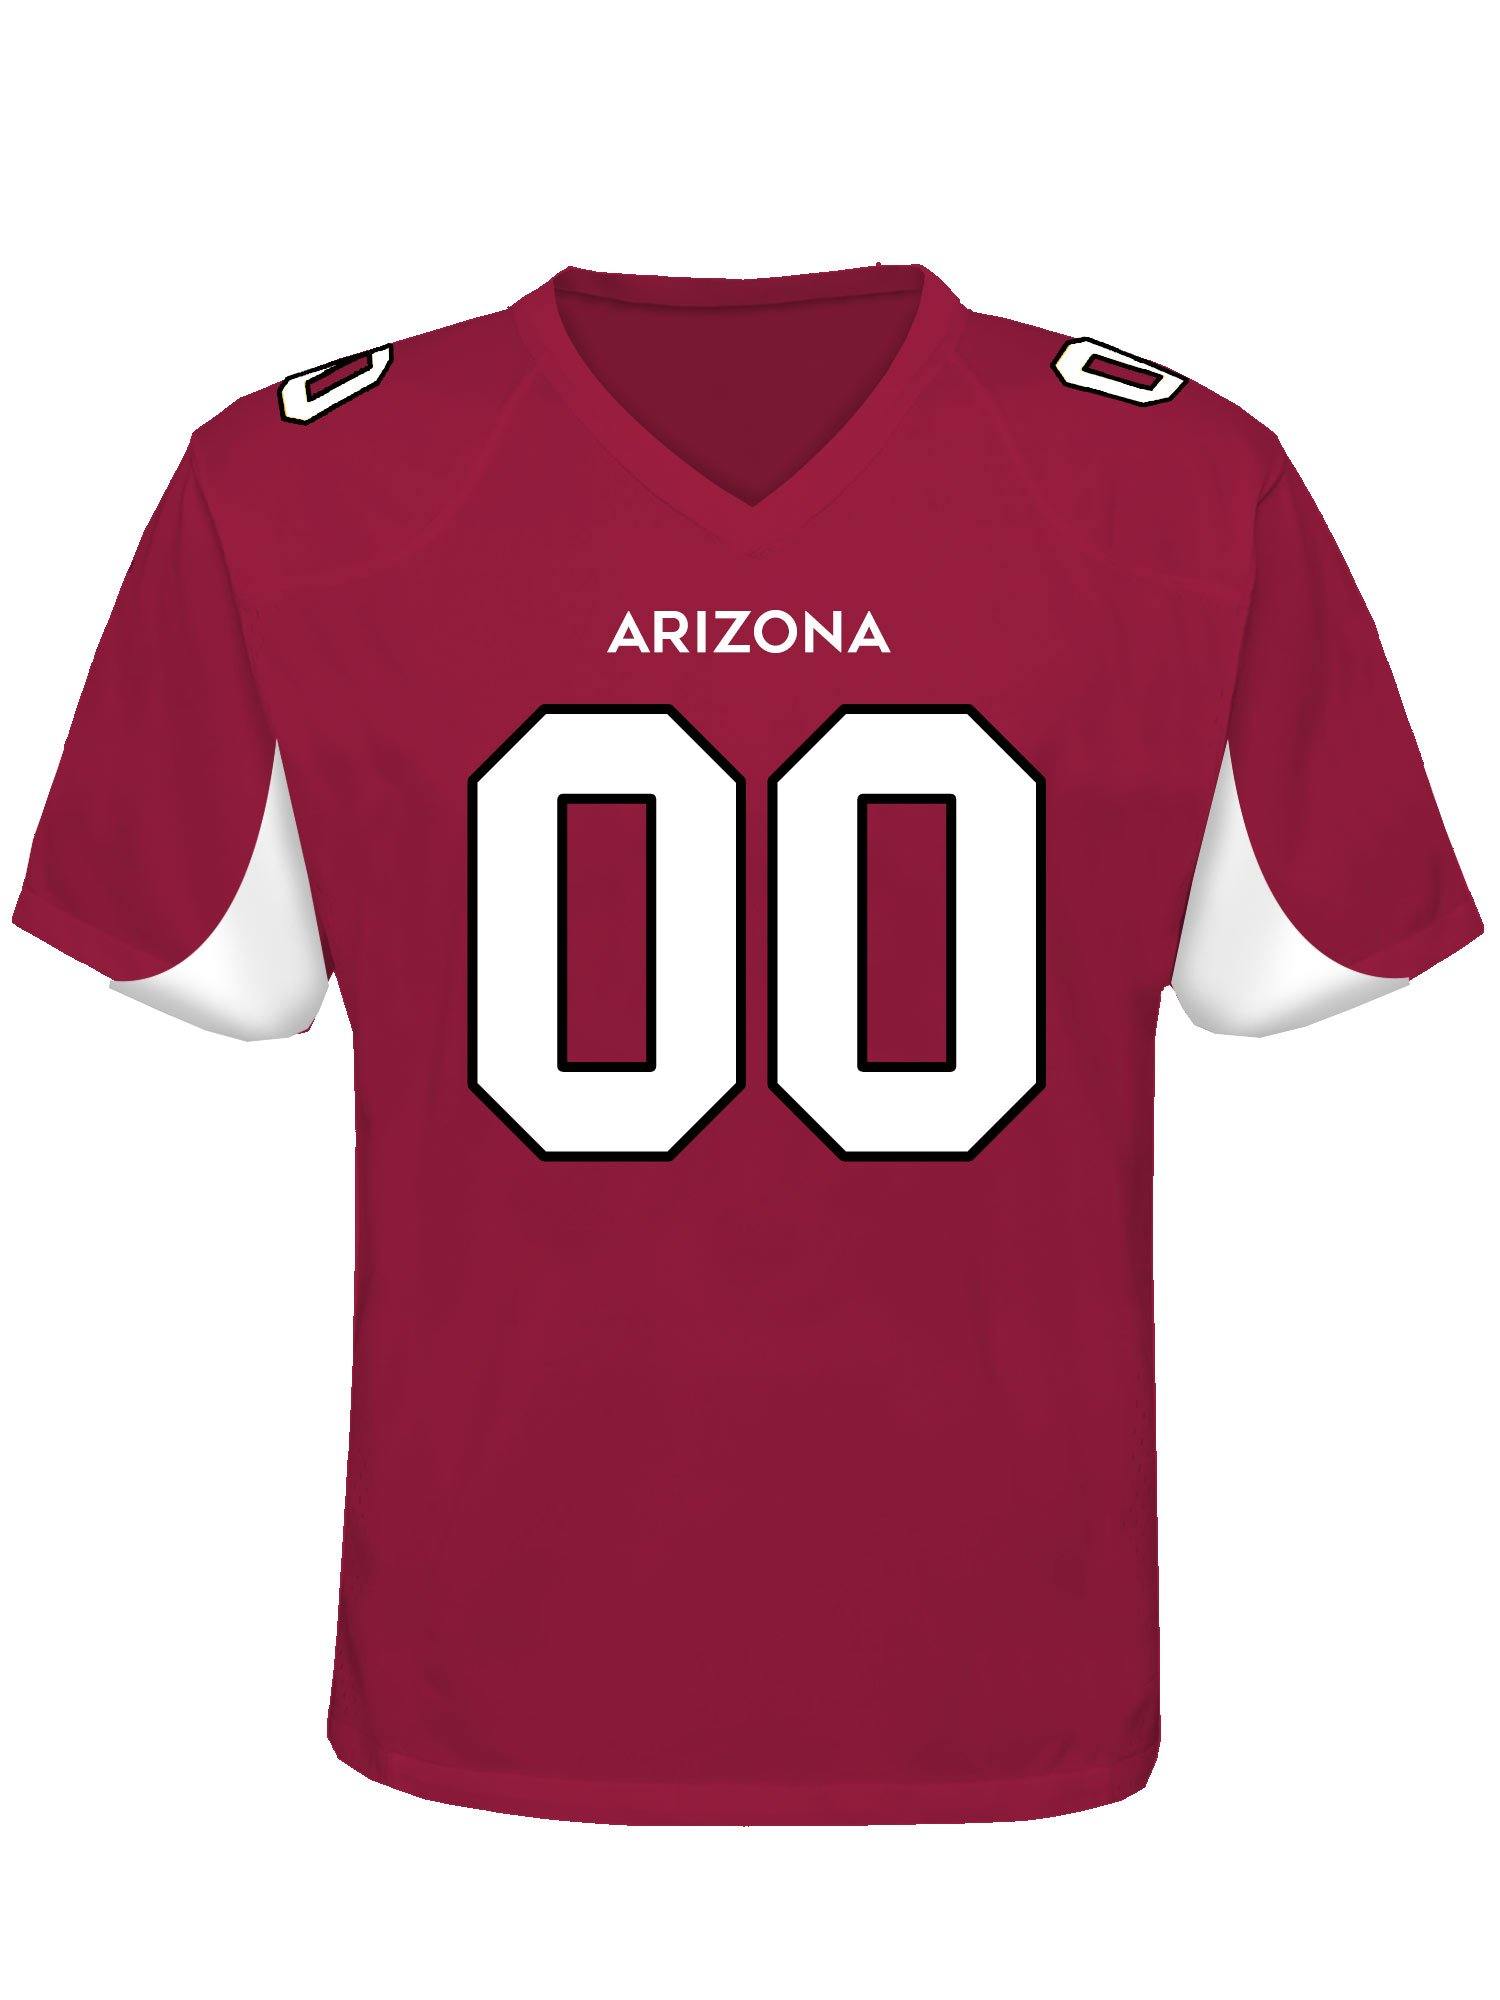 Arizona Custom Football Jersey - USA Made Dropship